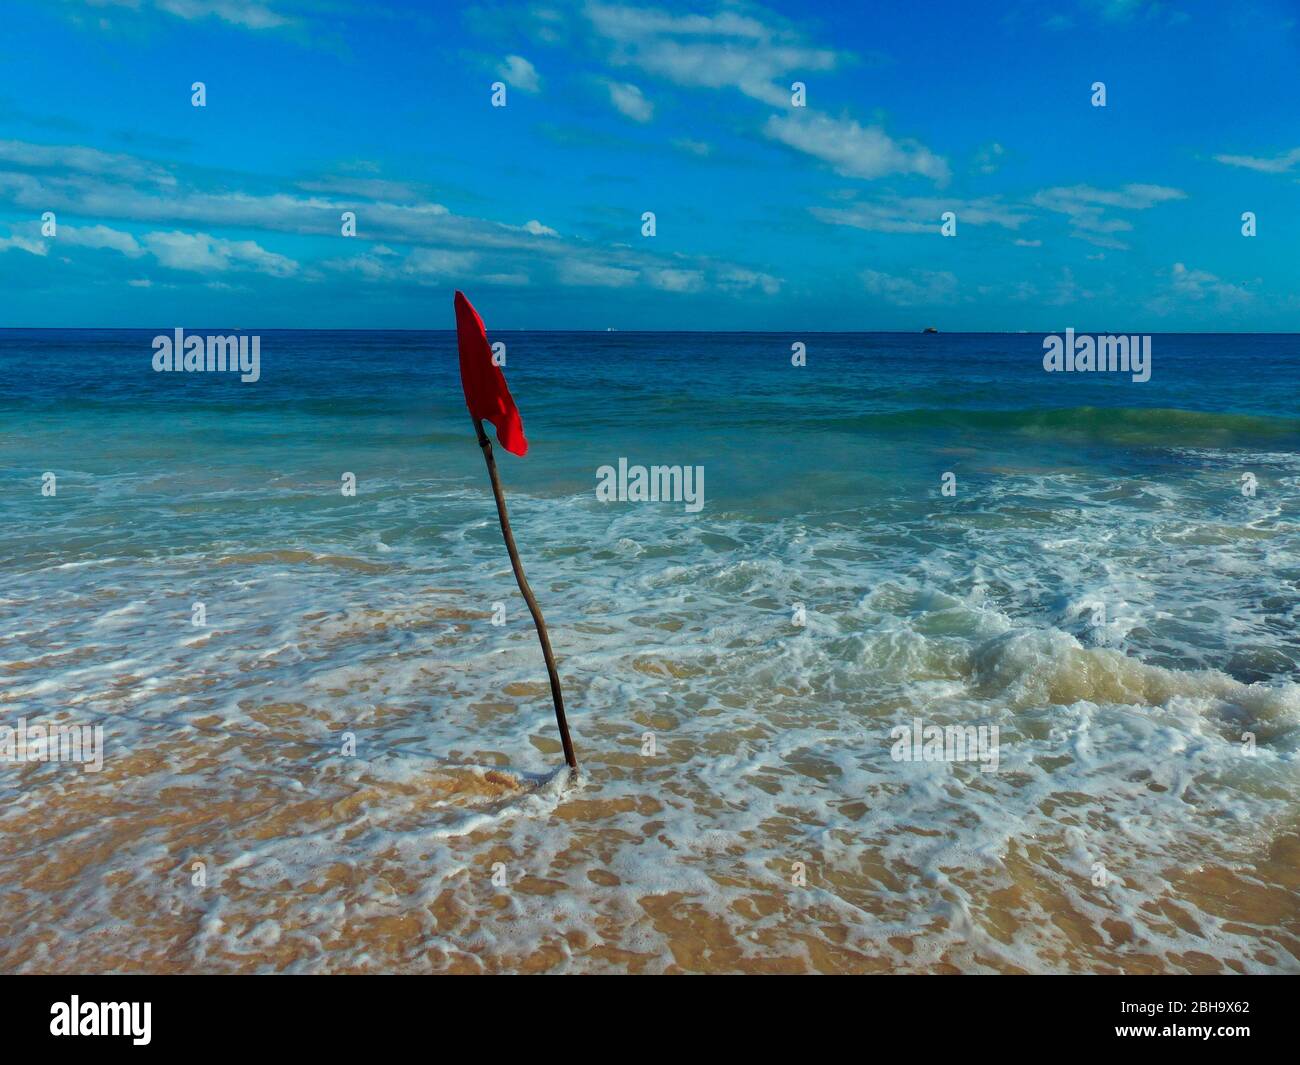 Le drapeau rouge, placé par le garde-vie, indique un danger. Aucun nageur ne doit pénétrer dans l'eau. Banque D'Images